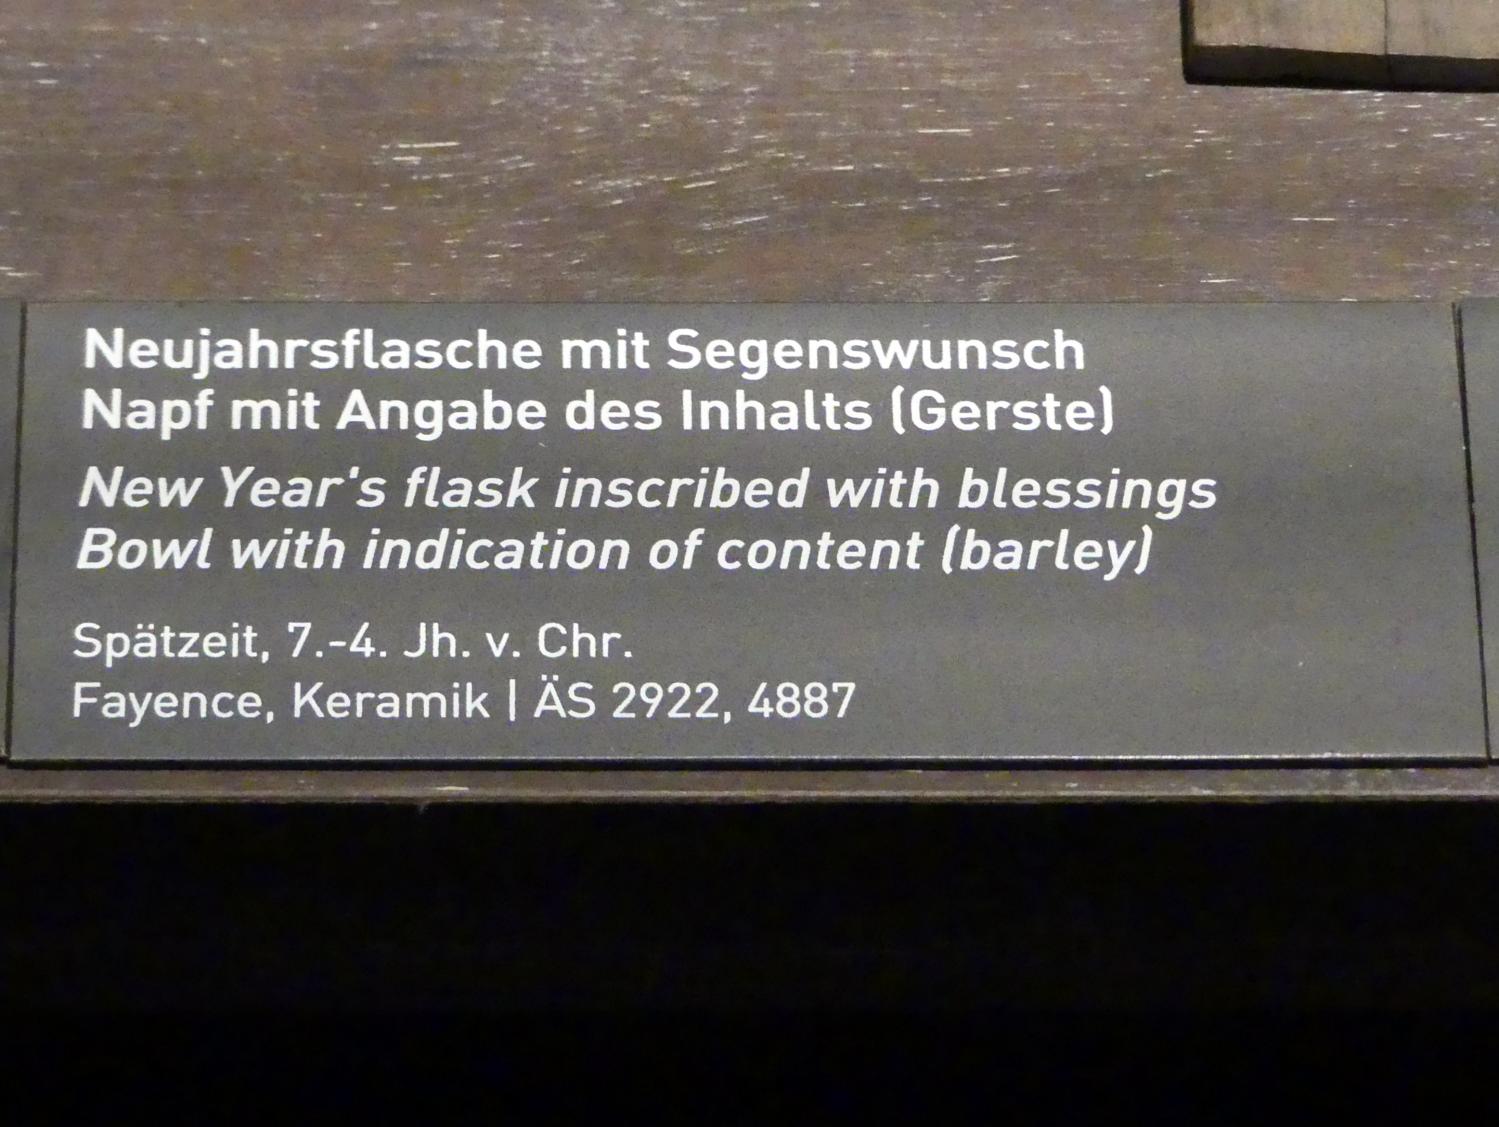 Napf mit Angabe des Inhalts (Gerste), Spätzeit, 360 - 342 v. Chr., 700 - 300 v. Chr., Bild 2/2